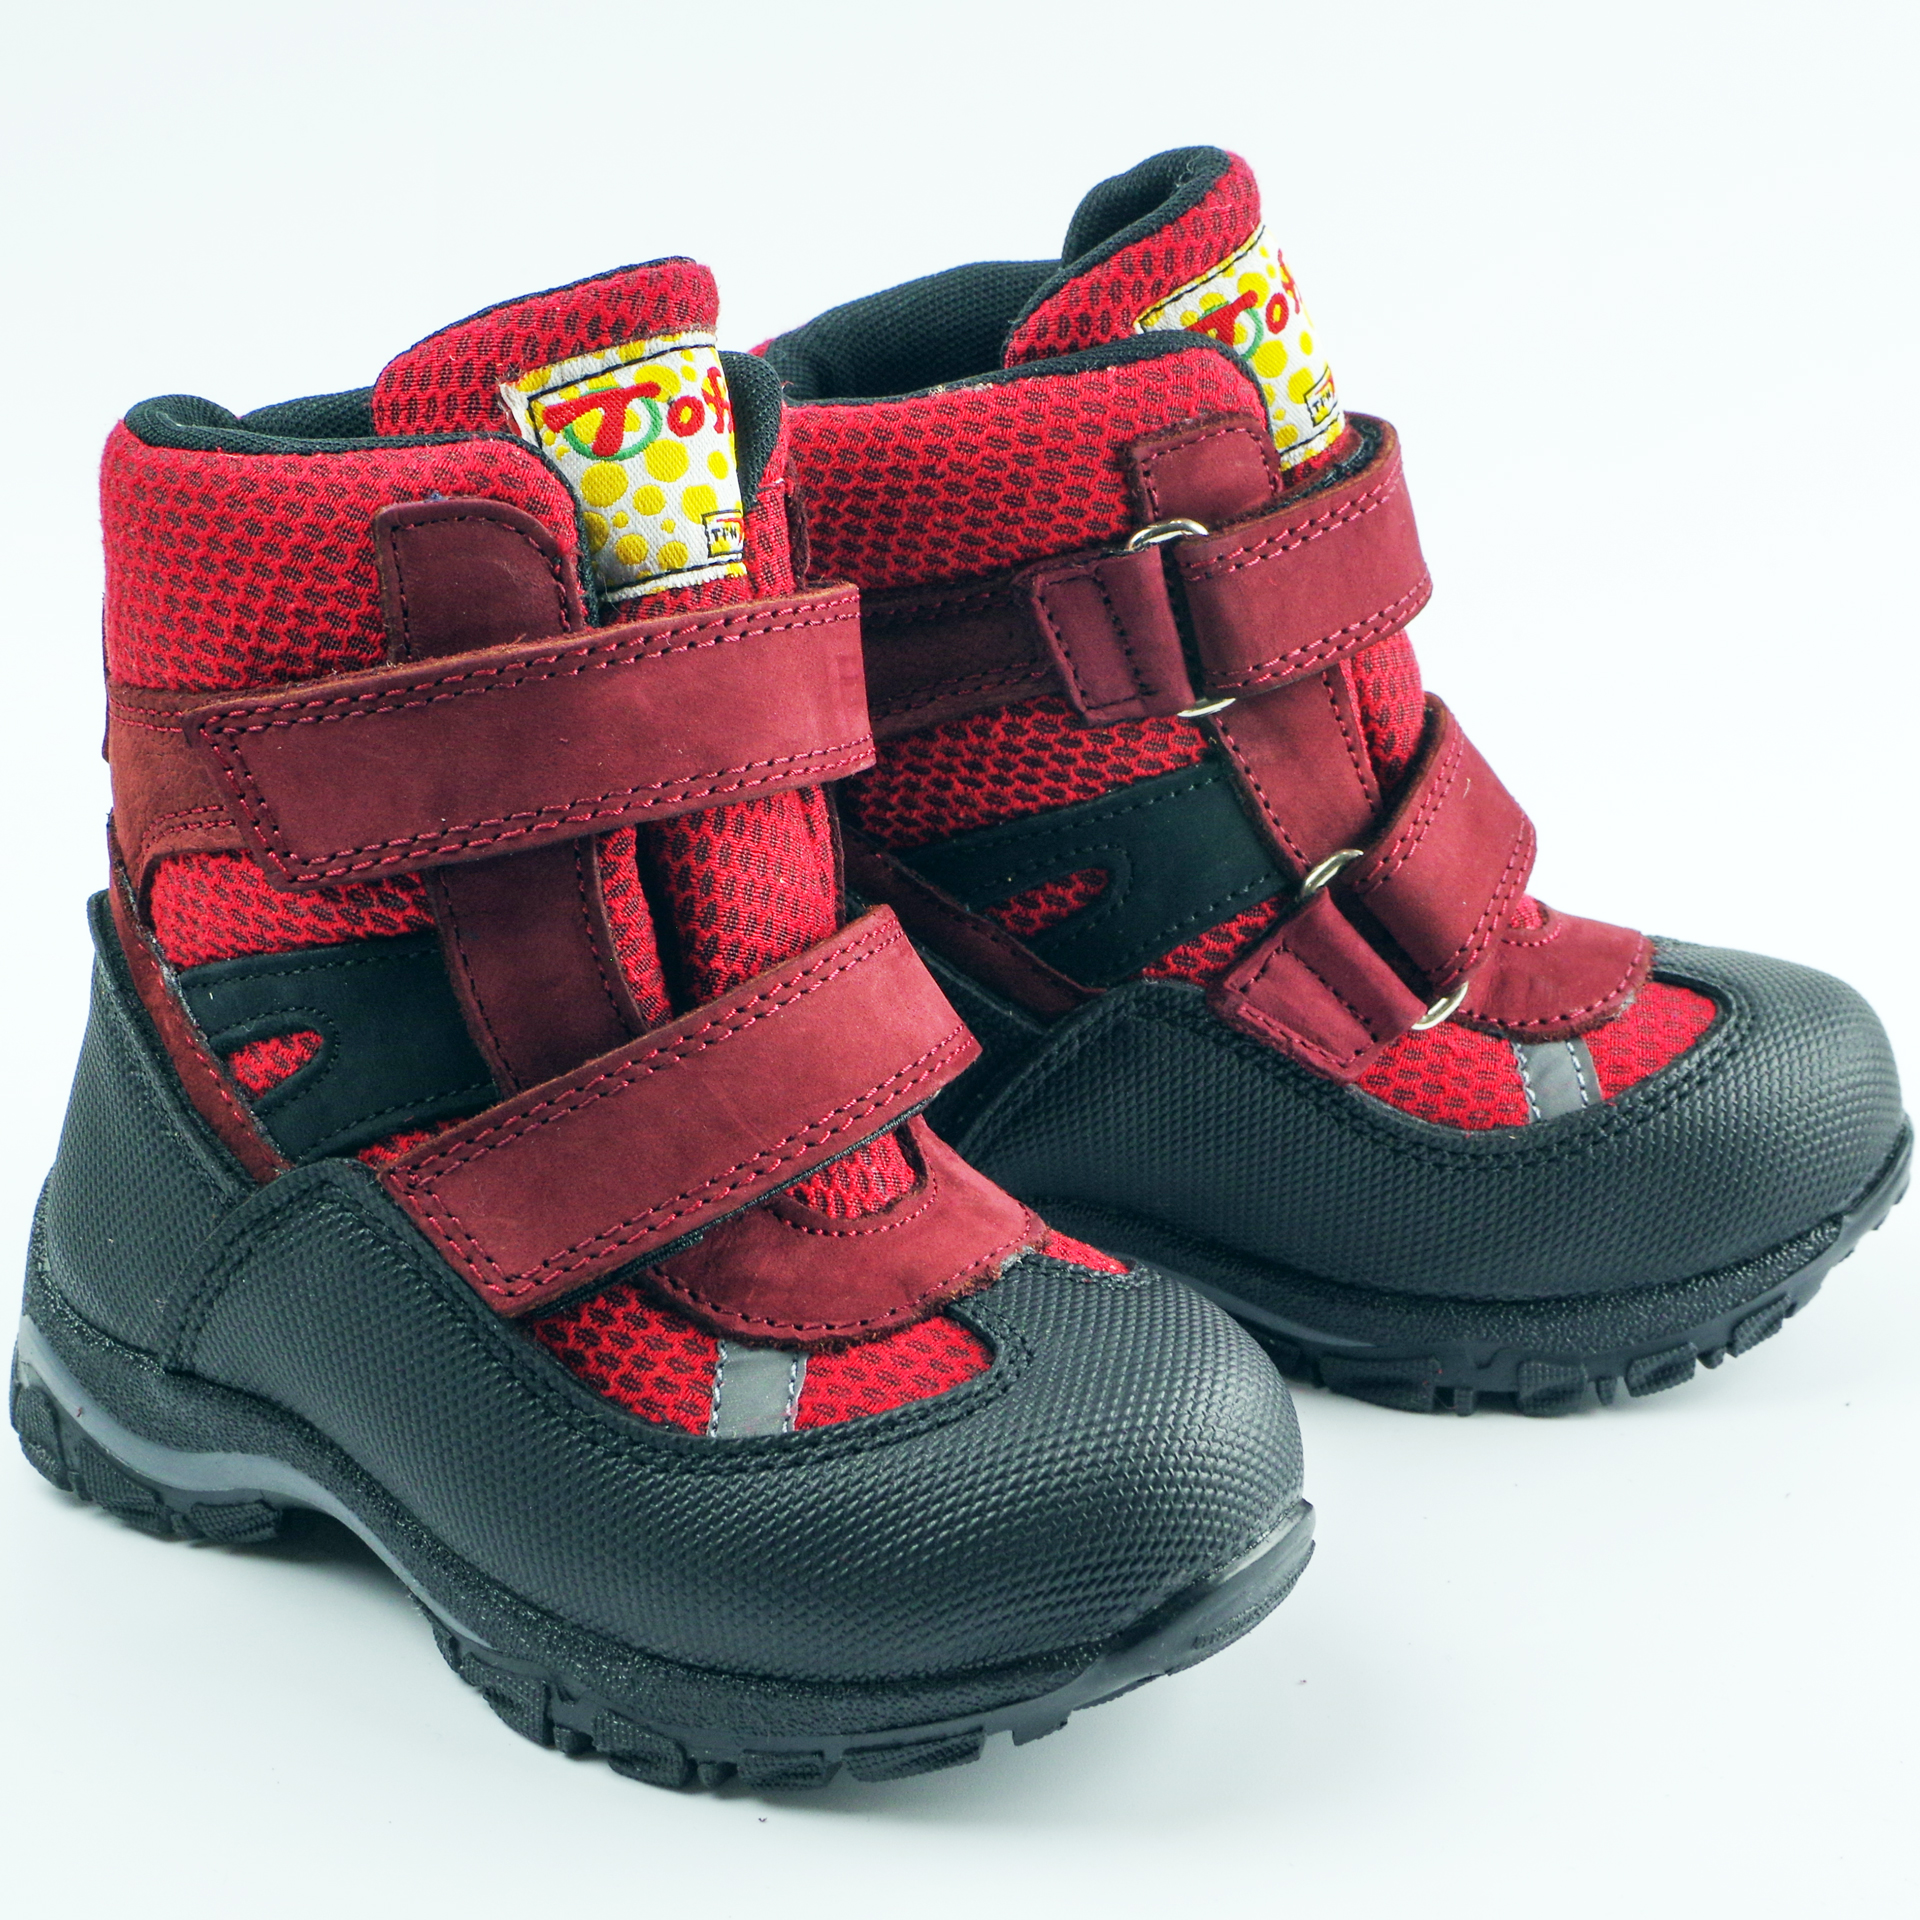 Мембранні зимові черевики (2145) для дівчинки, матеріал Мембрана, Червоний колір, 22-25 розміри – Sole Kids. Фото 3